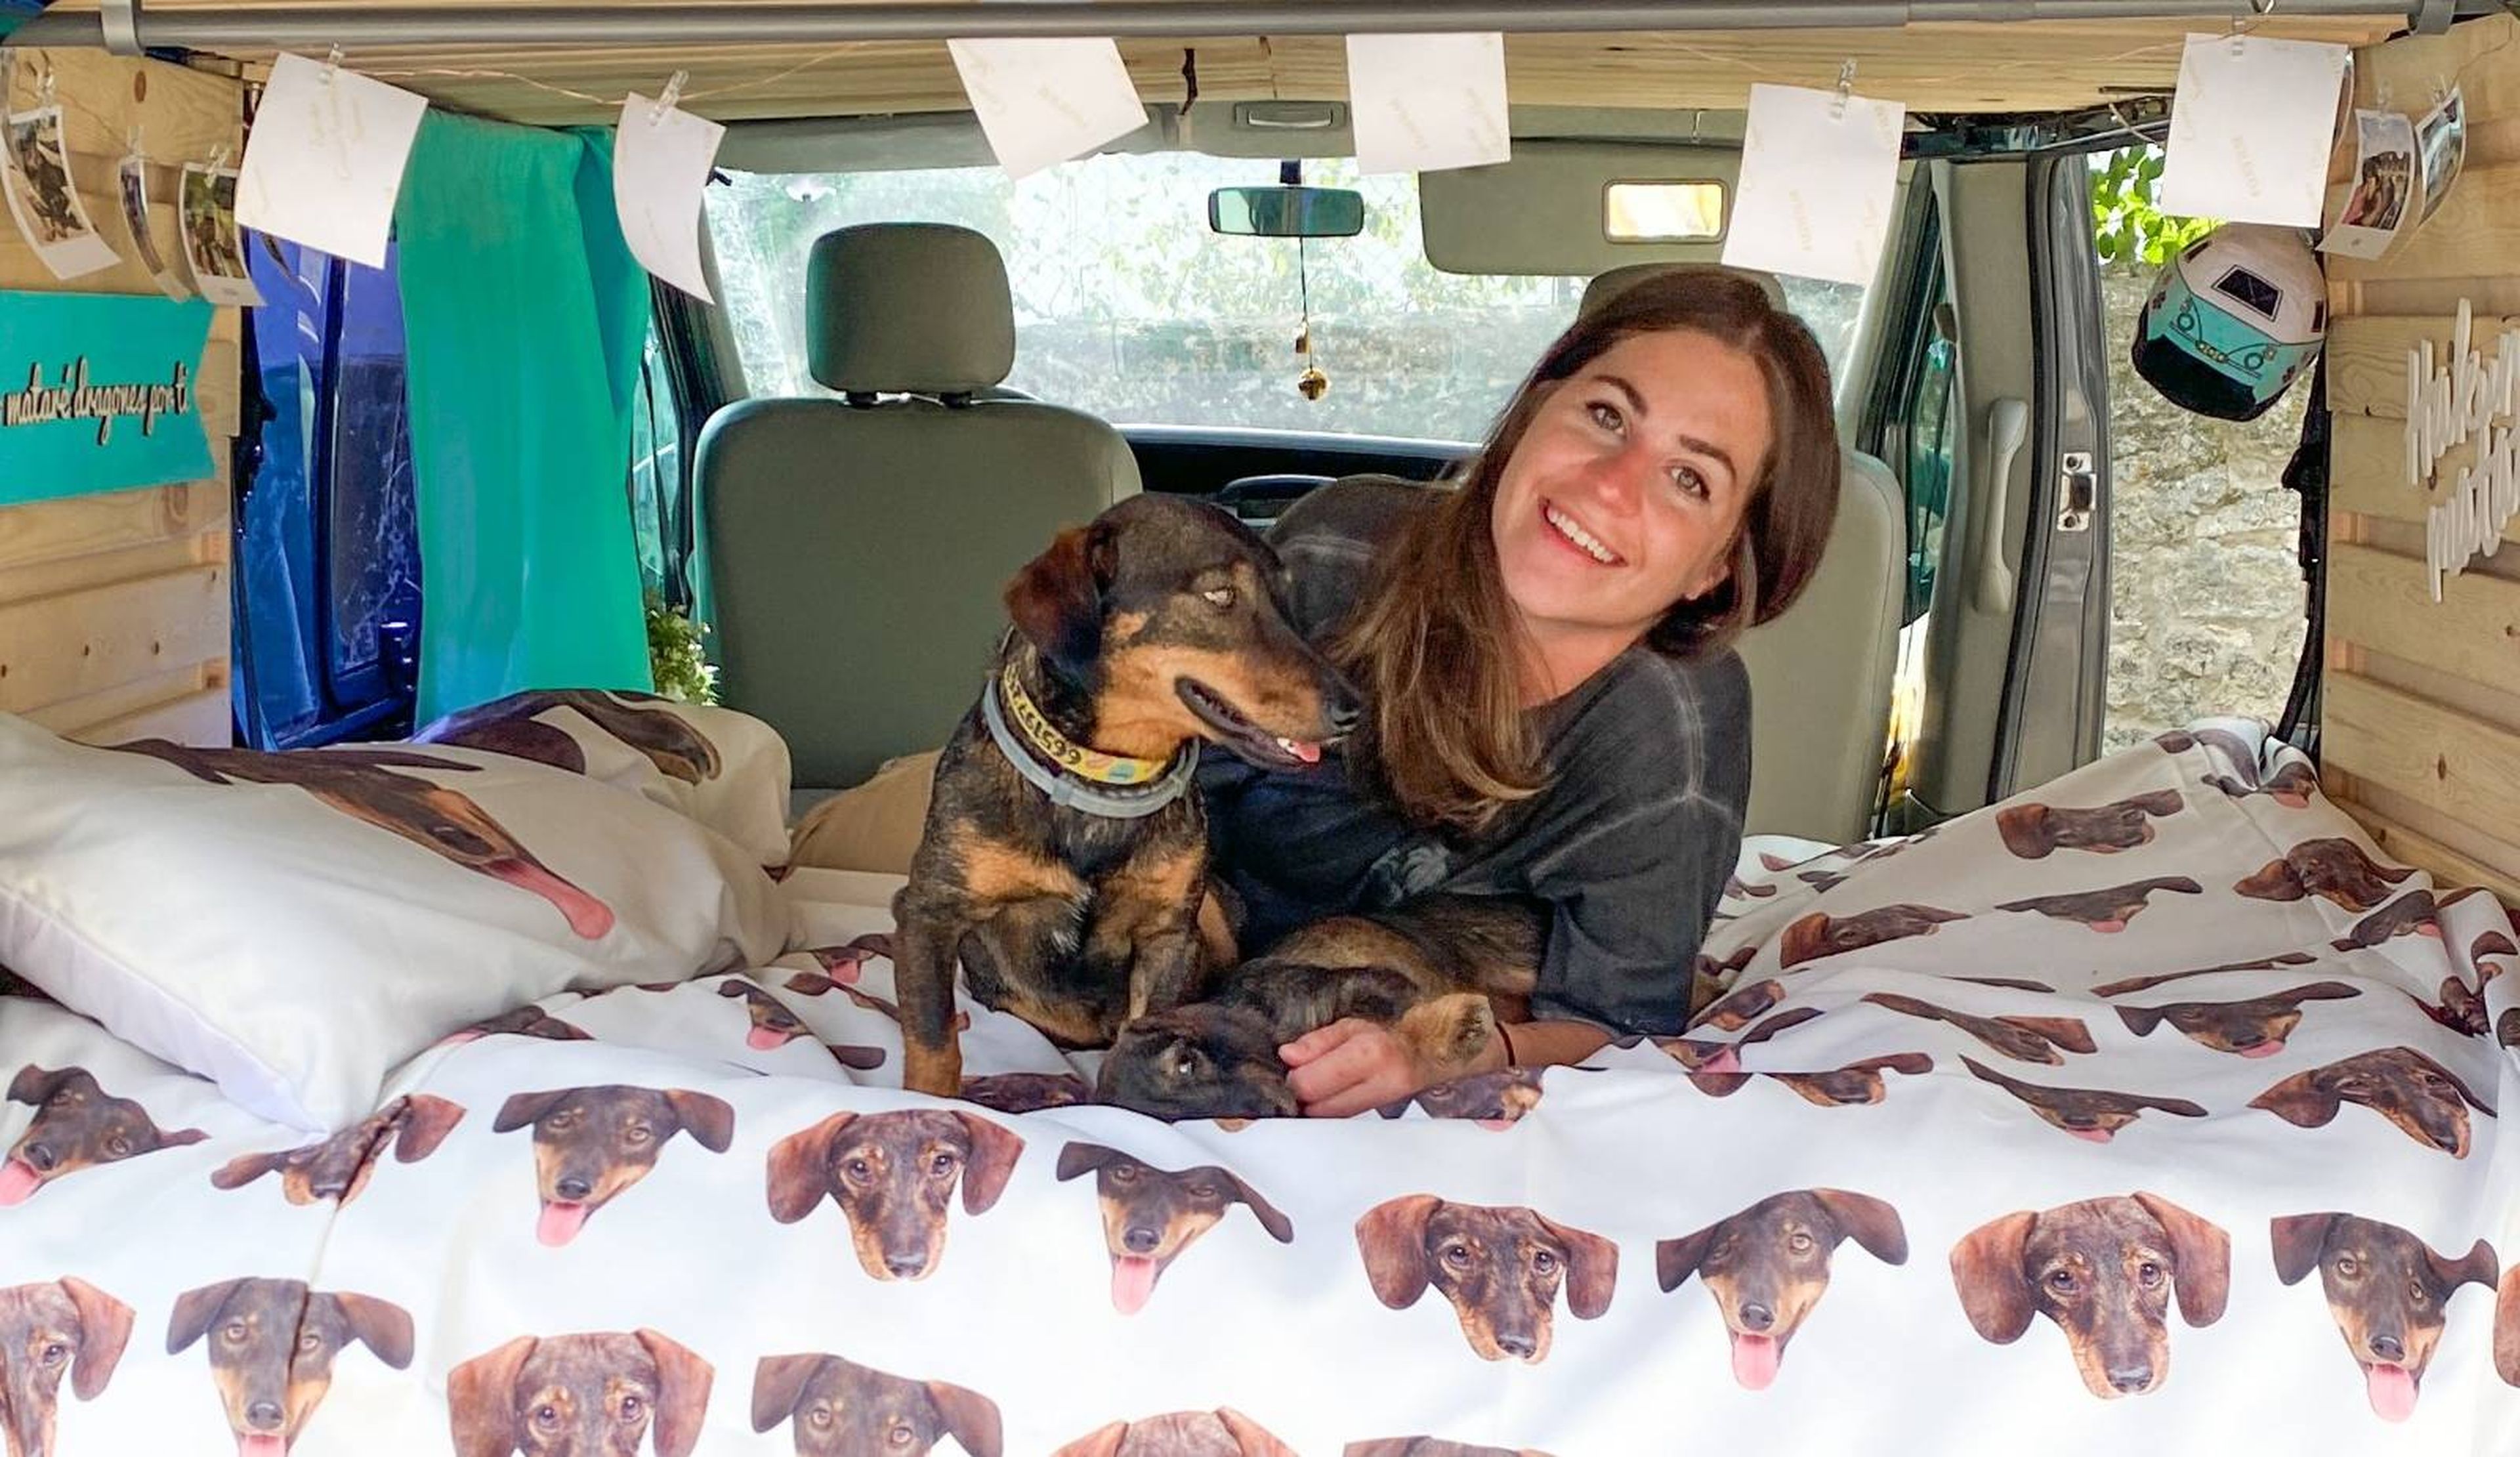 Una chica convierte una furgoneta en una camper sostenible